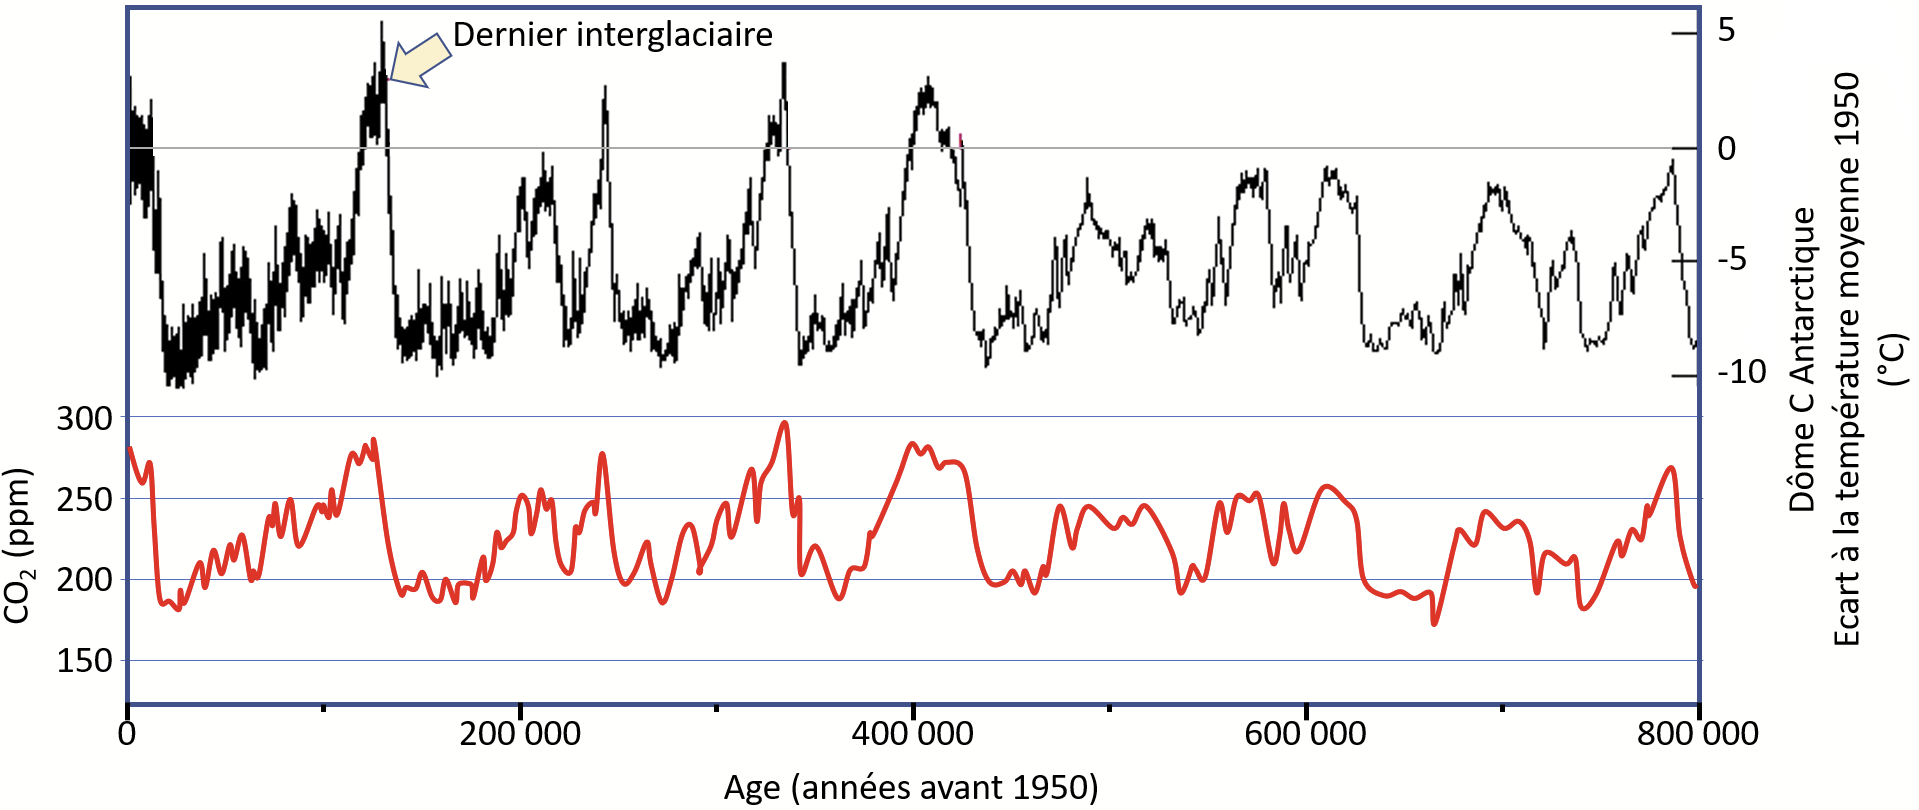 Graphique des courbes de CO2 et de températures dans les périodes interglaciaires